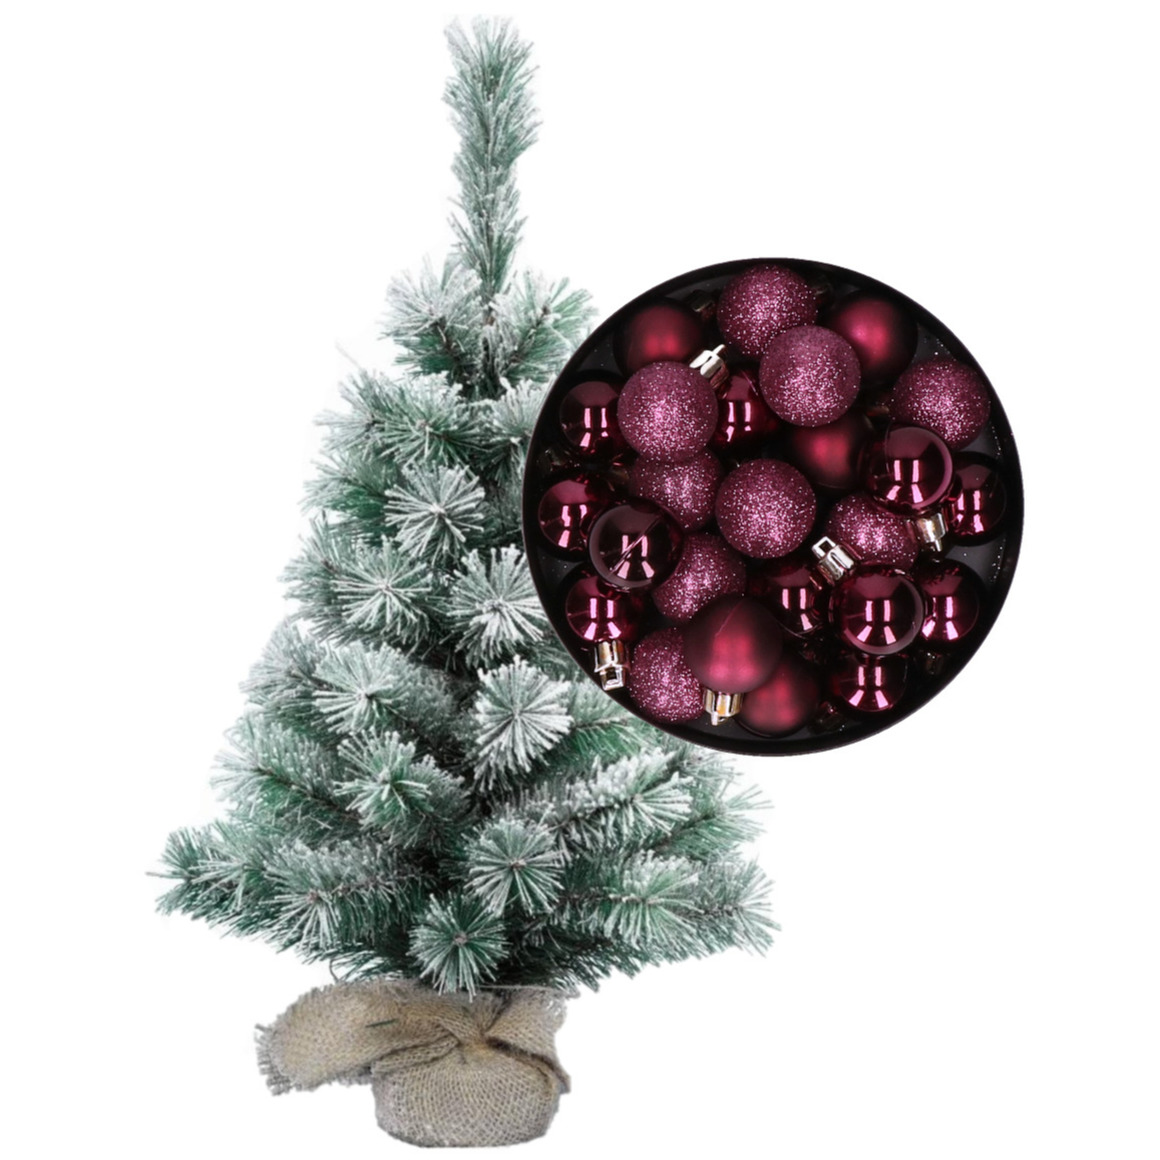 Besneeuwde mini kerstboom-kunst kerstboom 35 cm met kerstballen aubergine paars